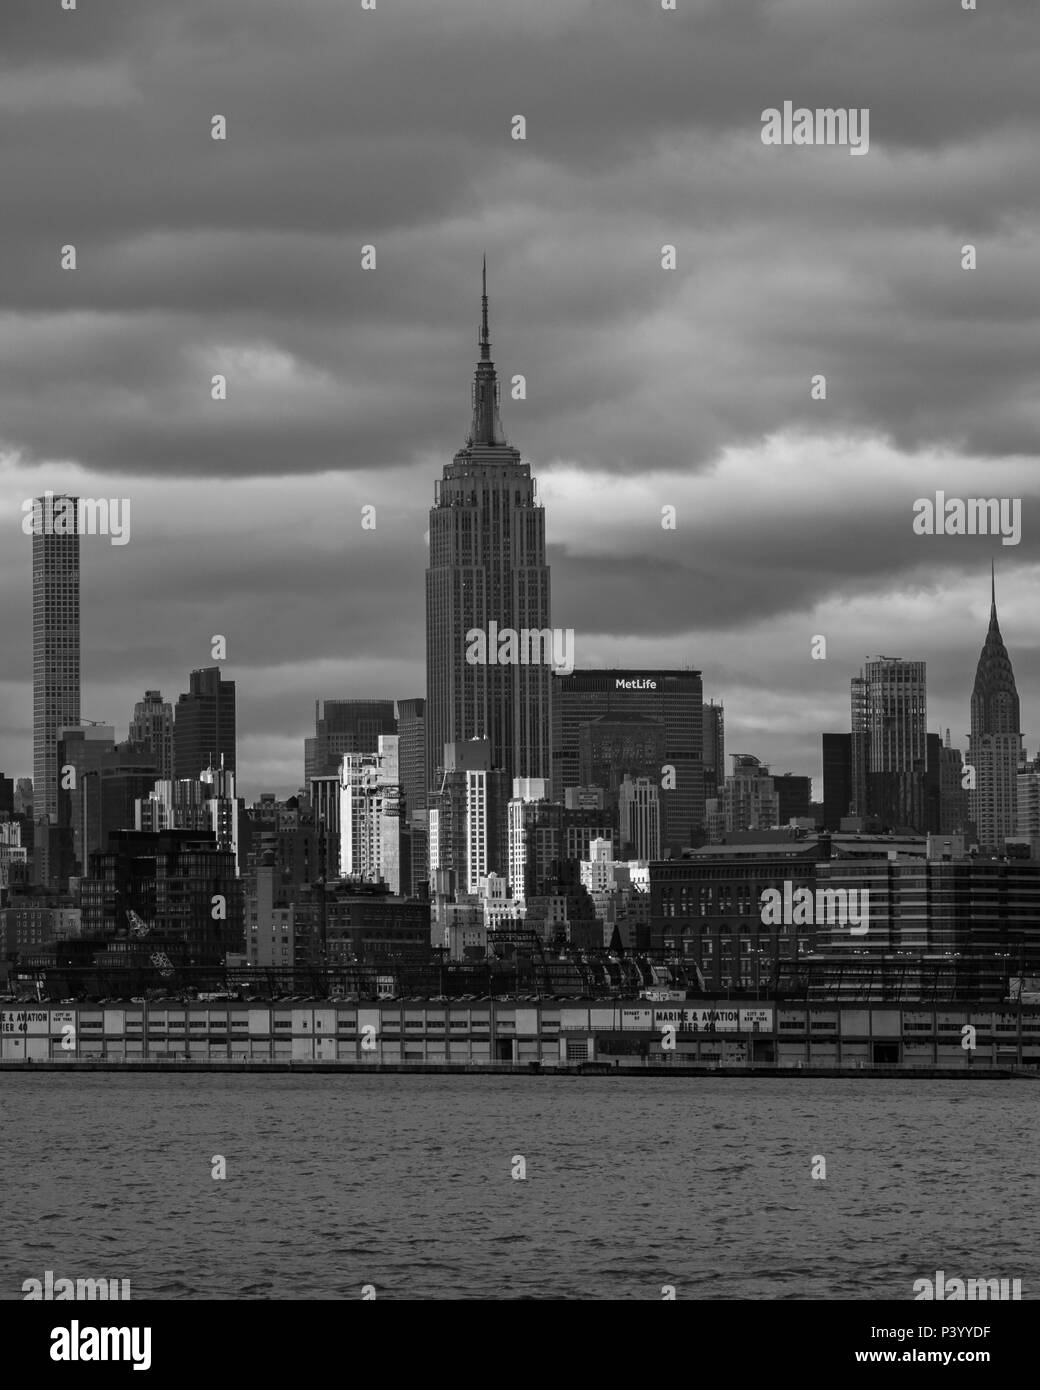 Immagine in bianco e nero dell'Empire State Building e la skyline di Manhattan al tramonto dalla attraverso il fiume Hudson in New Jersey, New York, Stati Uniti d'America Foto Stock